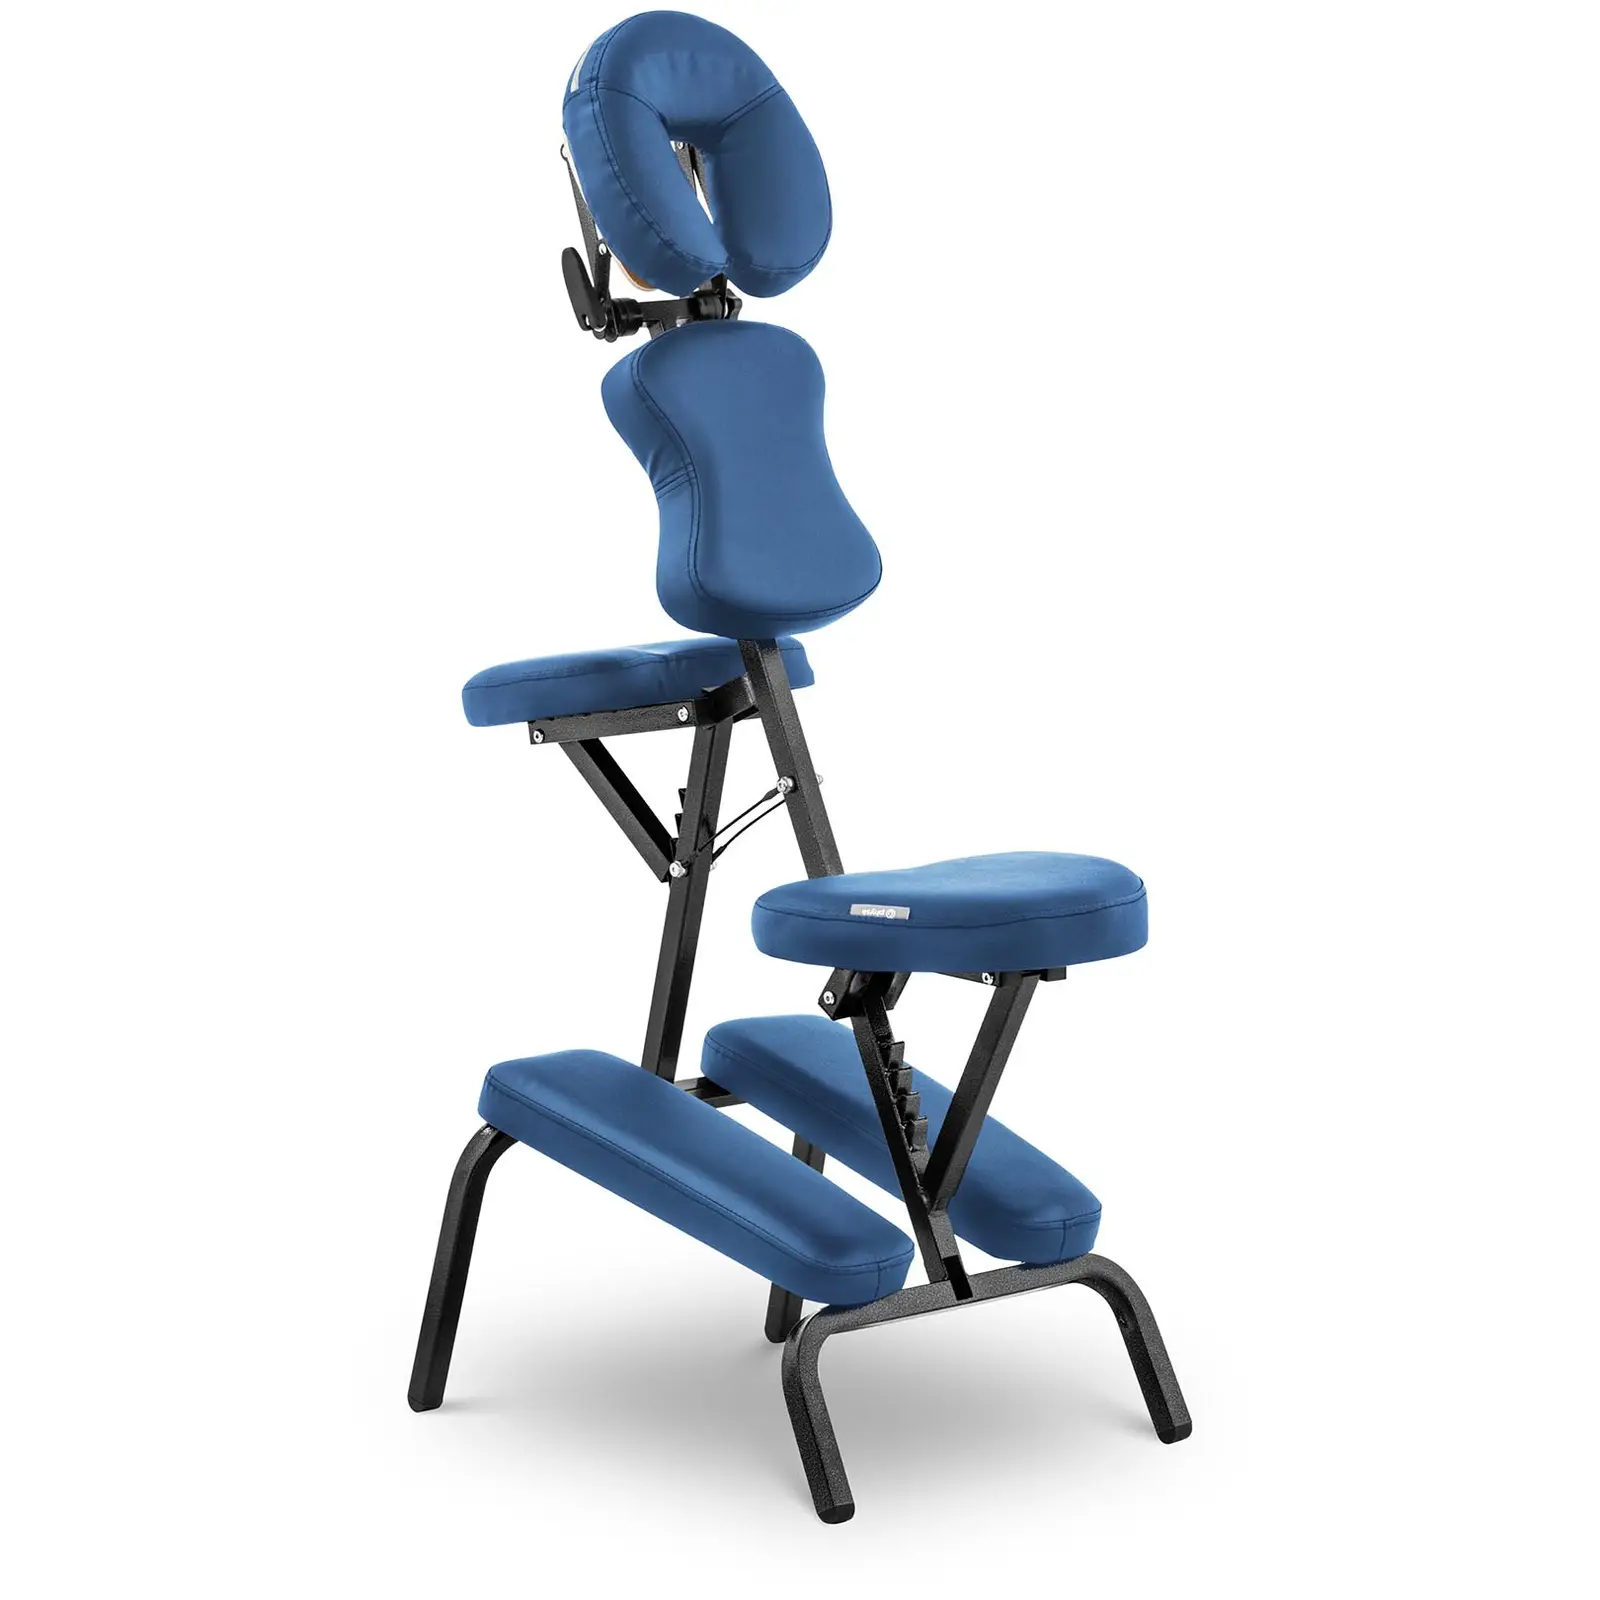 Massagestuhl klappbar - 130 kg - Blau - 1